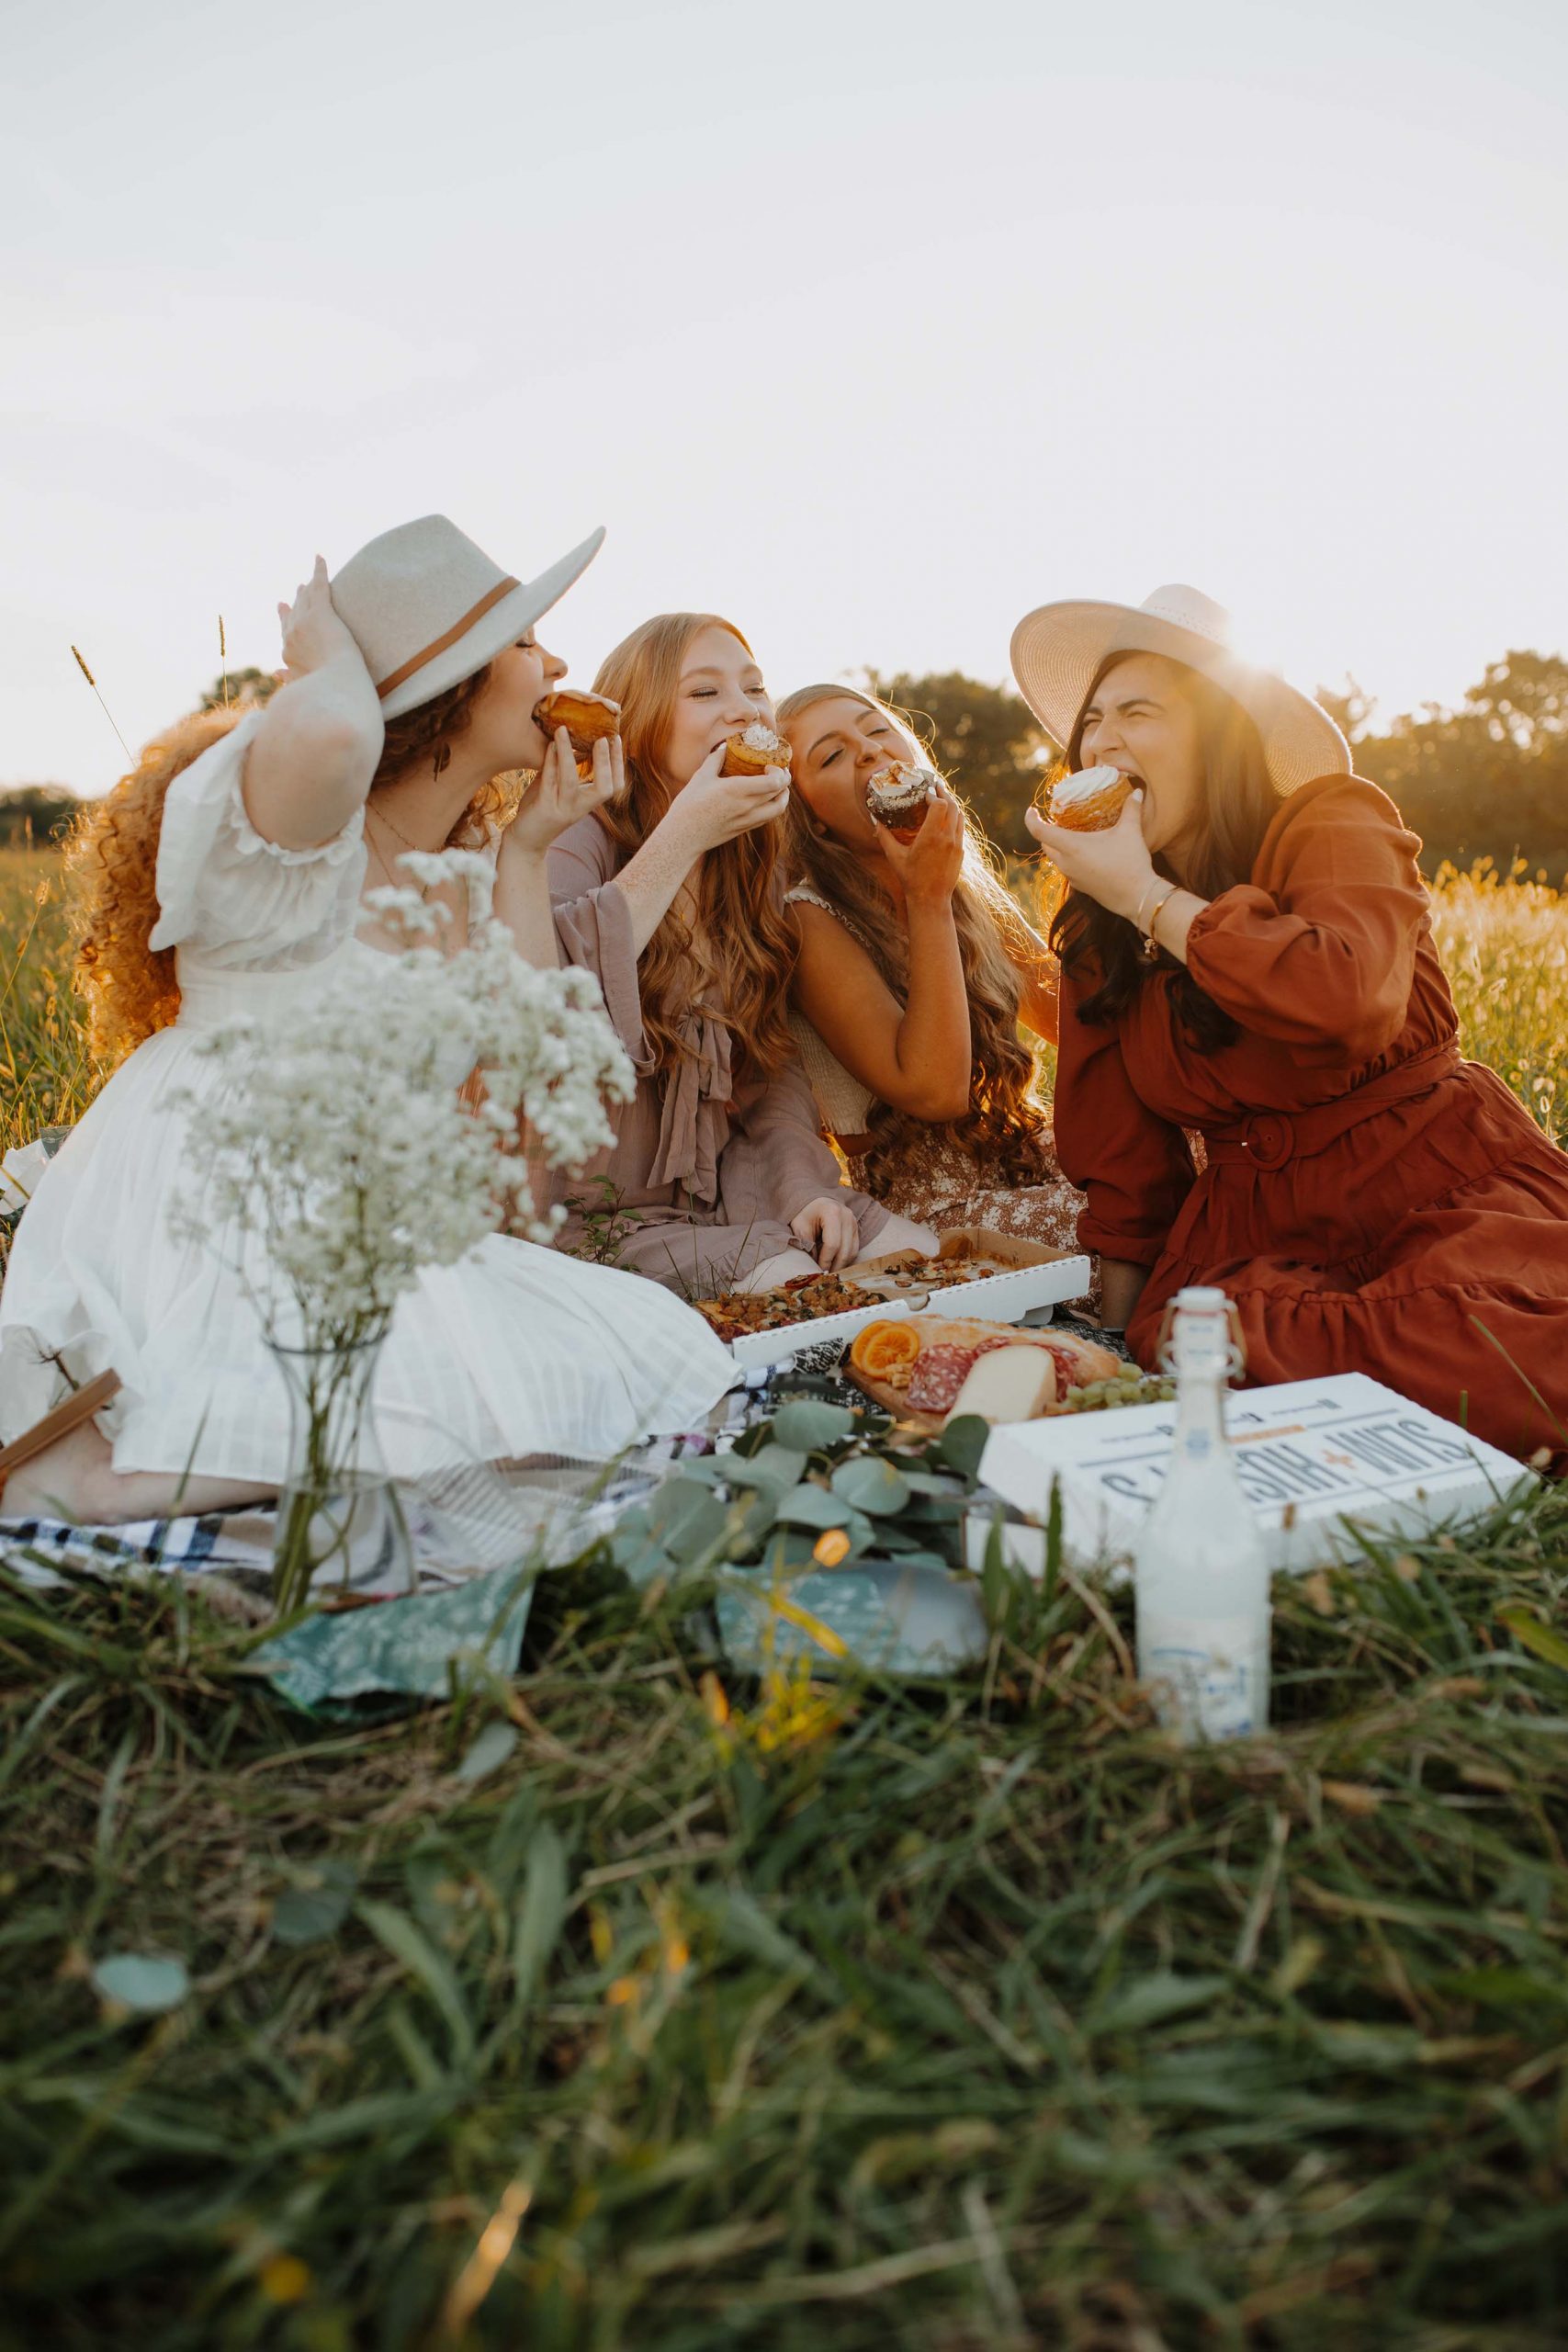 cung hoàng đạo những cô gái hạnh phúc nhóm bạn vui vẻ ăn uống picnic giữa cánh đồng william king unsplash